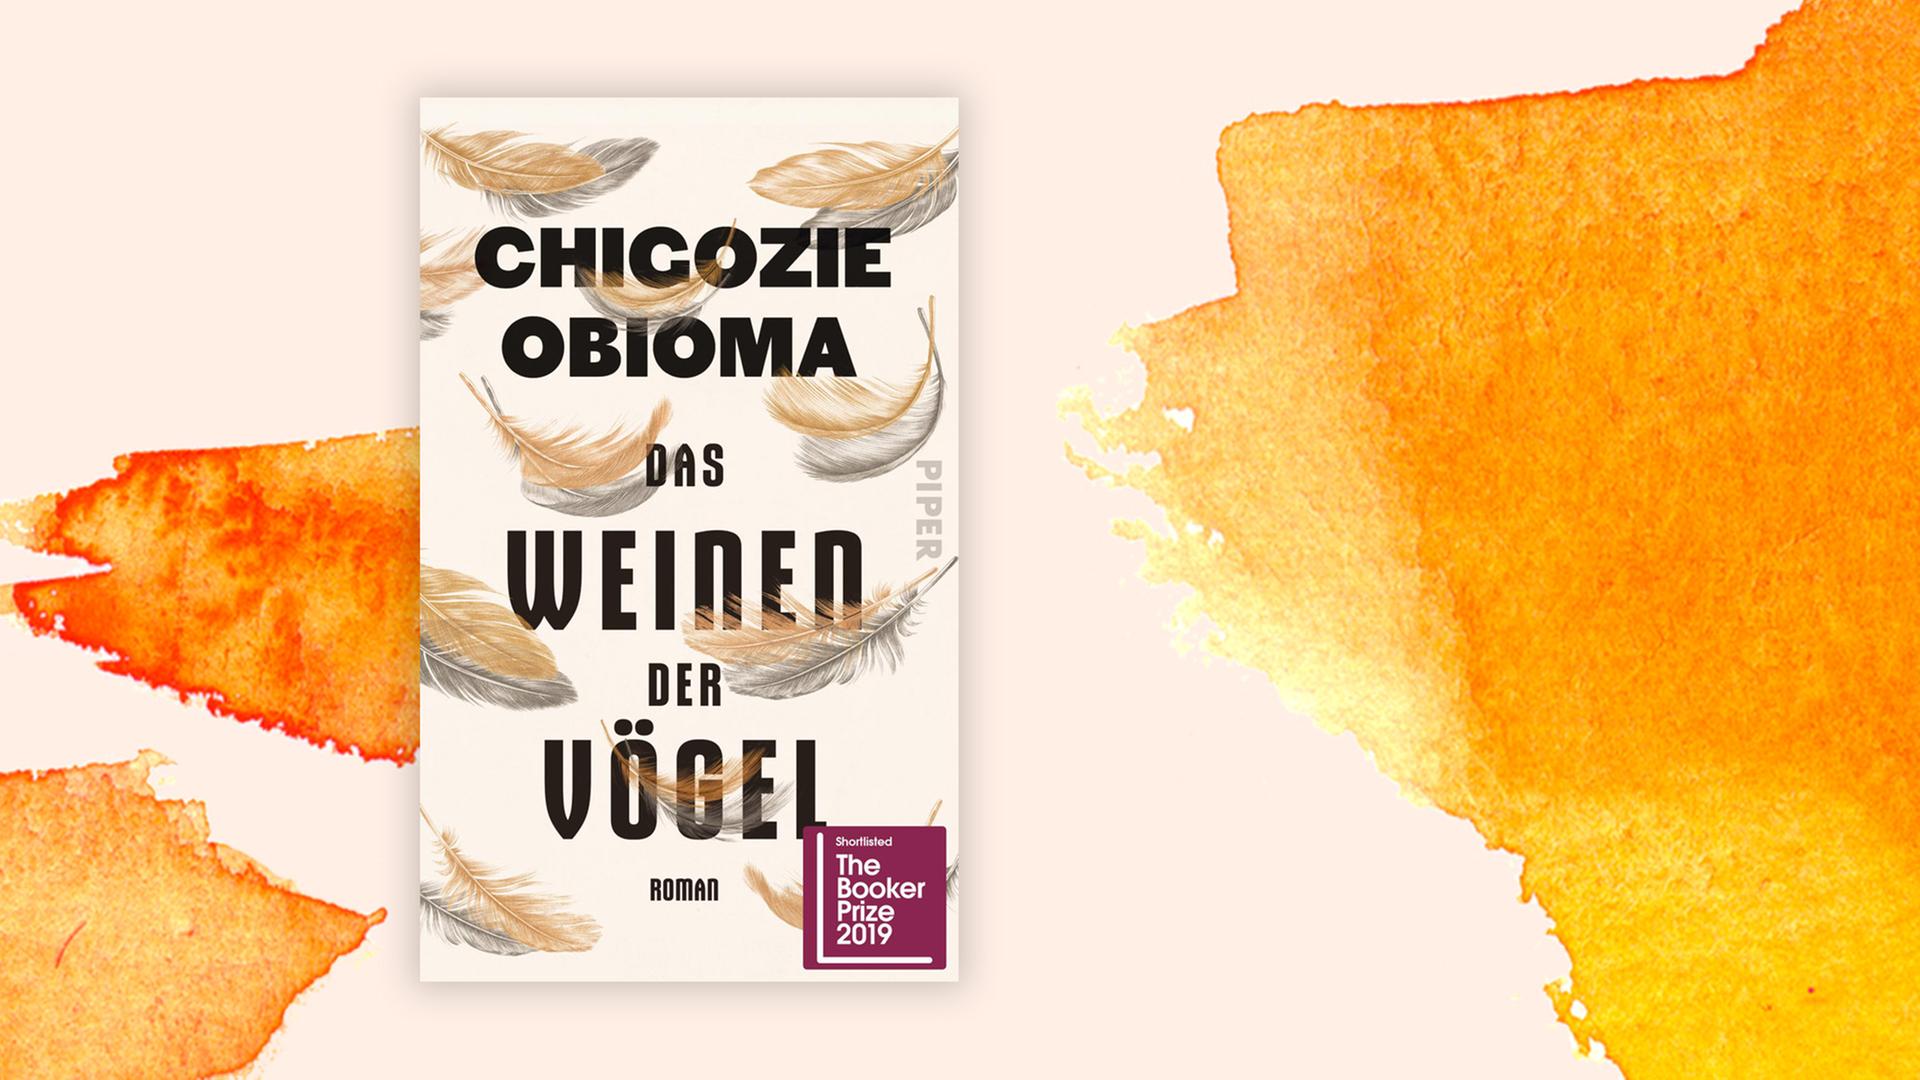 Buchcover zu "Das Weinen der Vögel" von Chigozie Obioma.